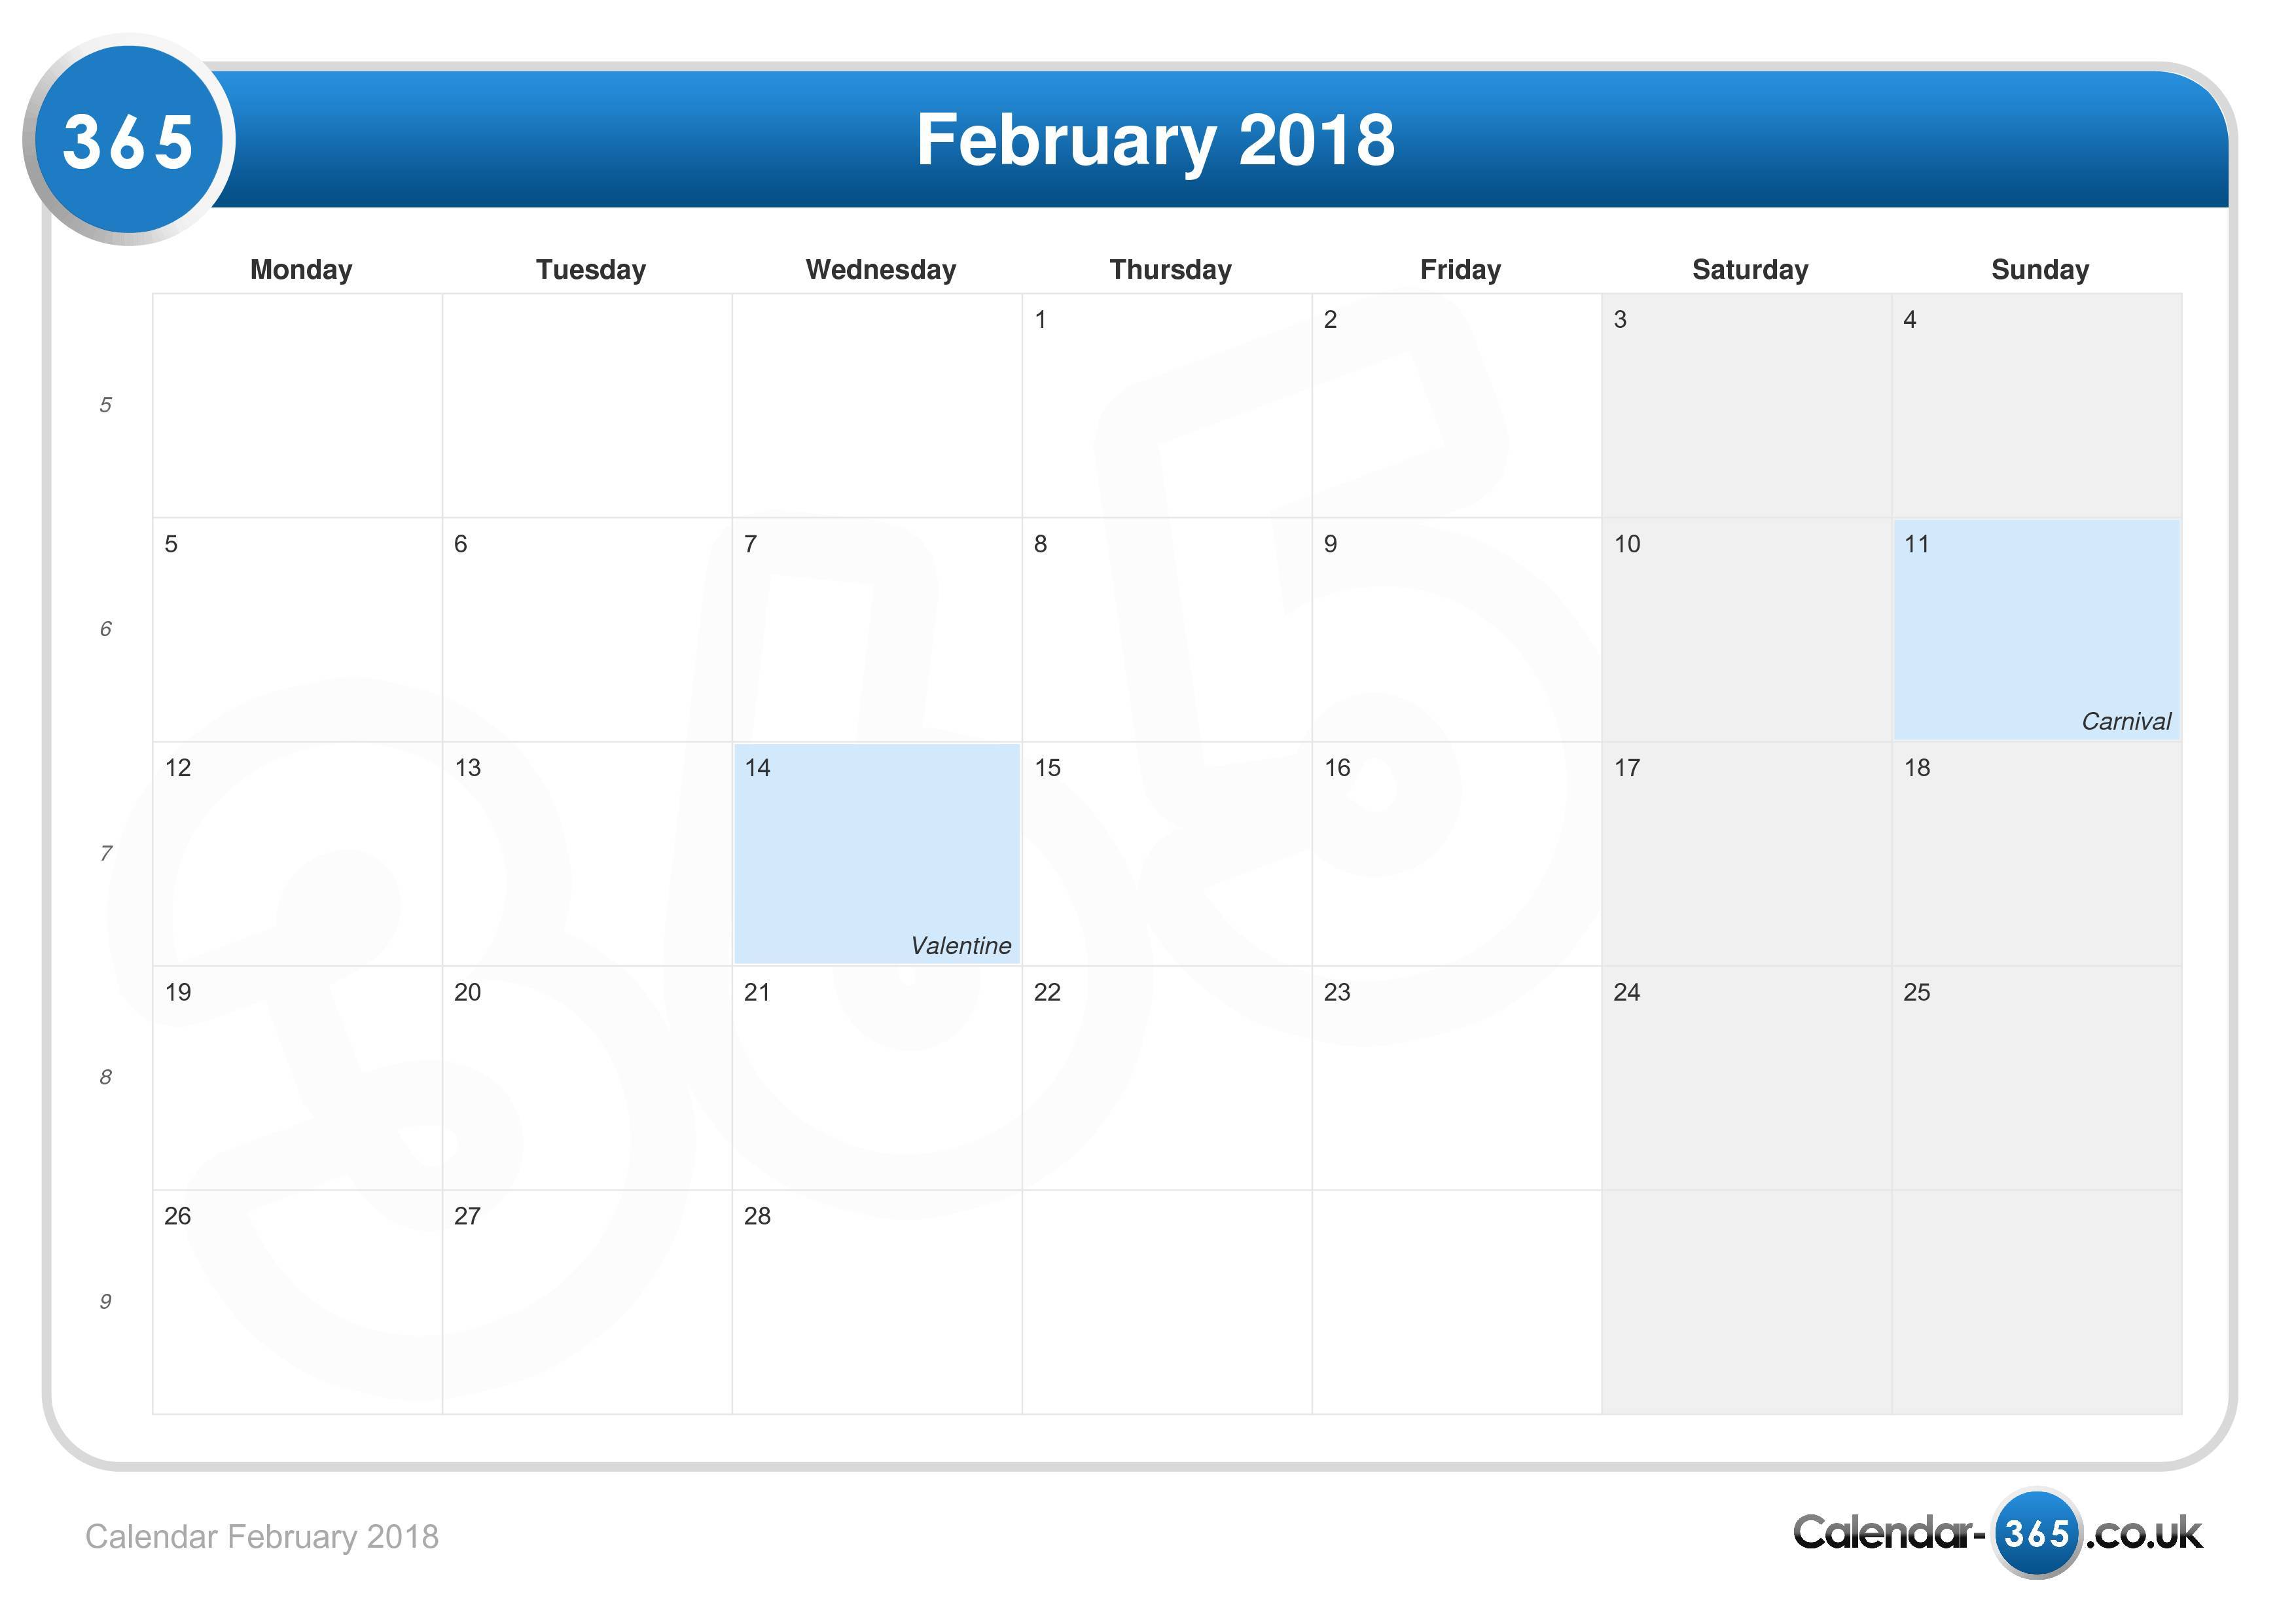 February 2018 Calendar February 2018 Calendar PItvVB